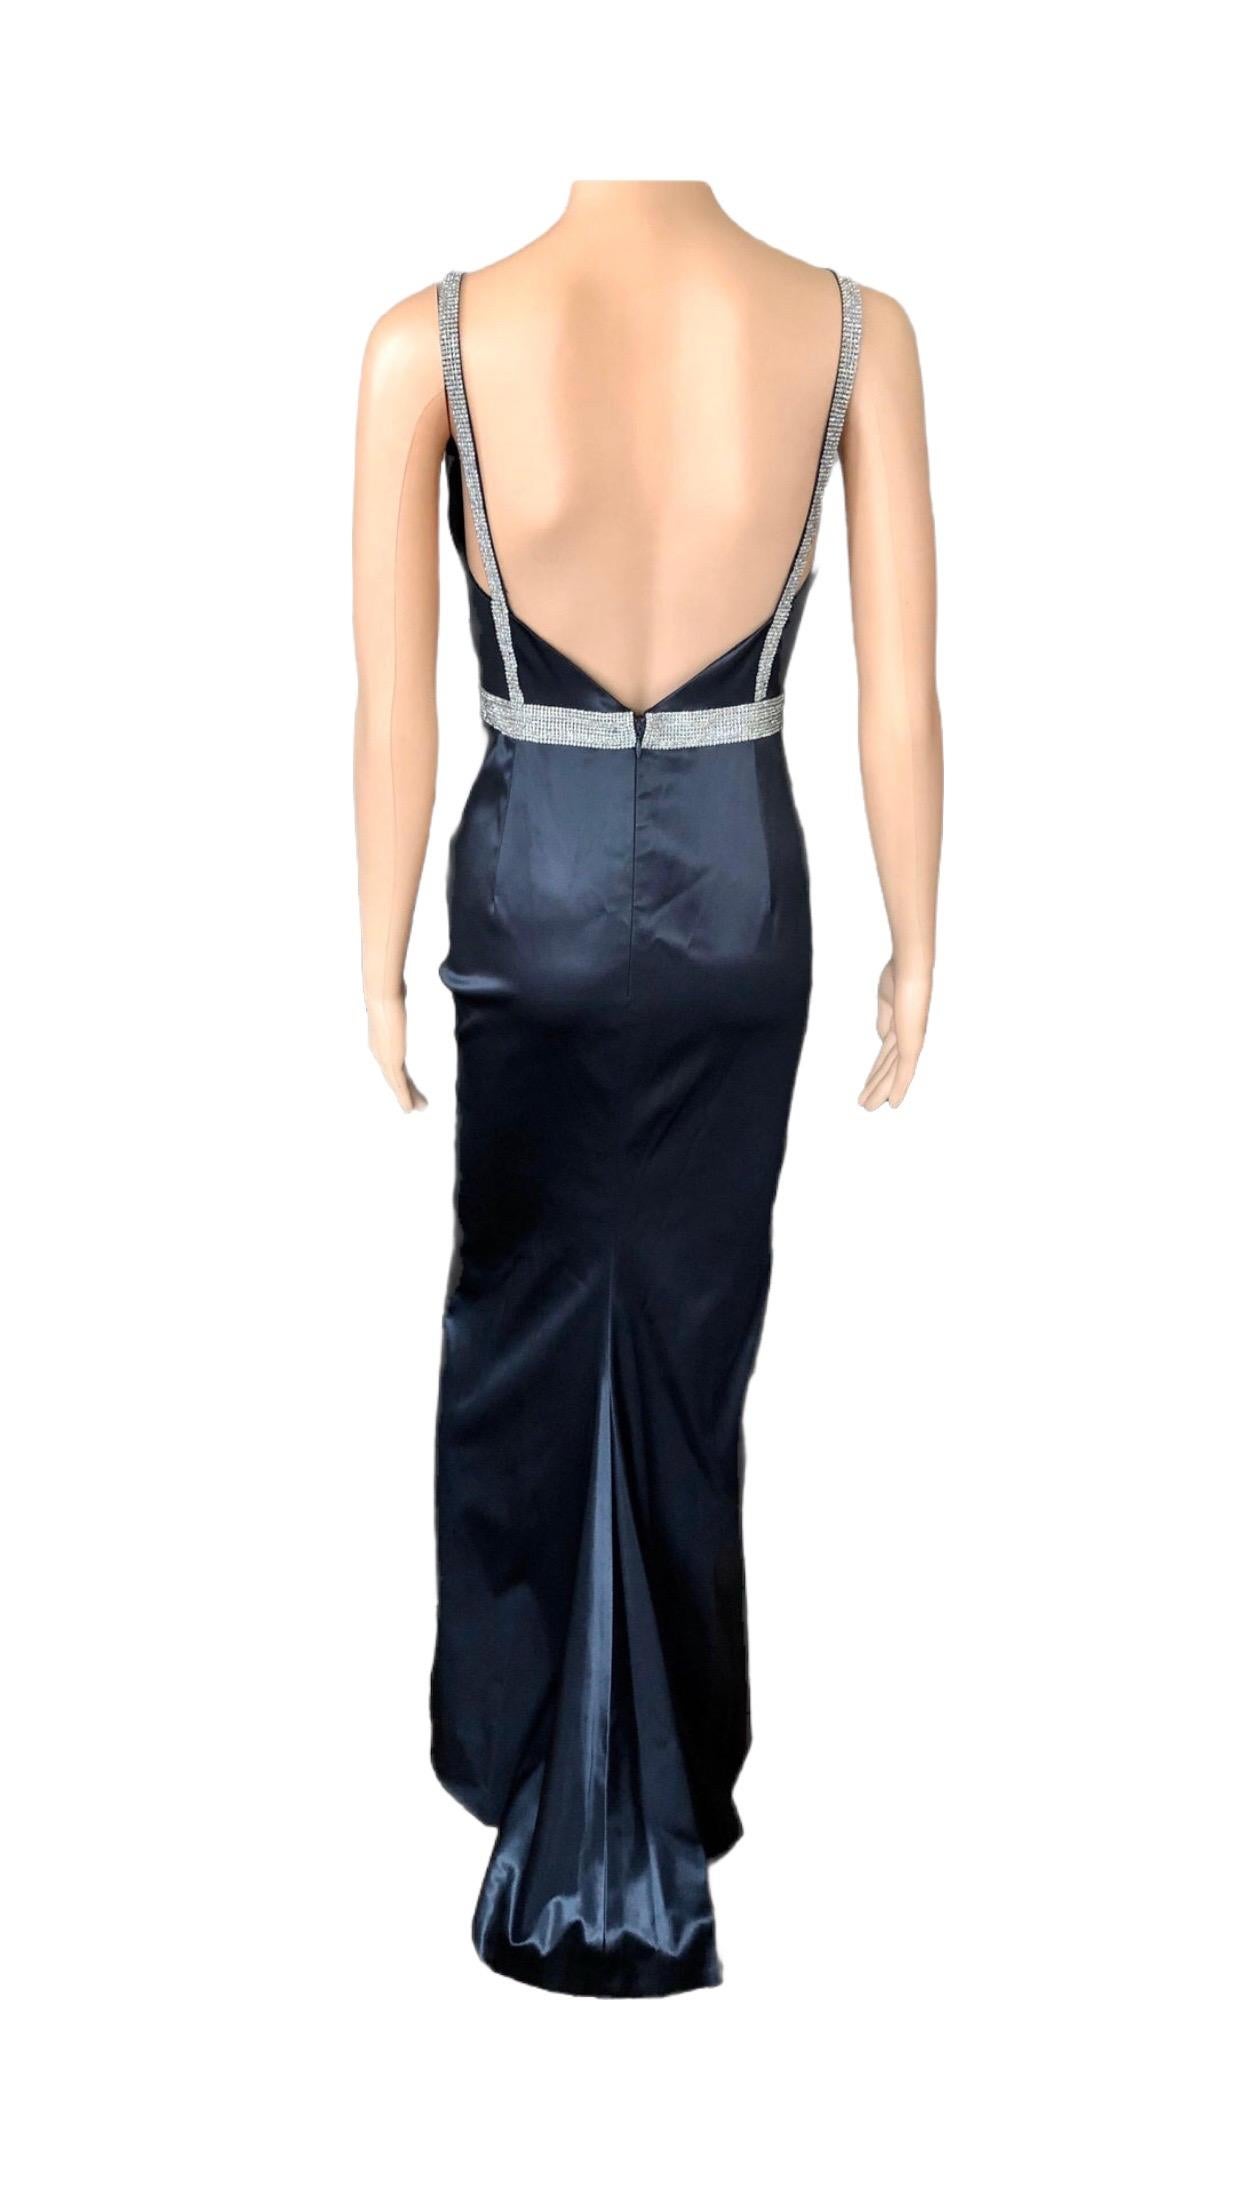 Women's Dolce & Gabbana S/S 2004 Embellished Crystal Belt Satin Black Evening Dress Gown For Sale